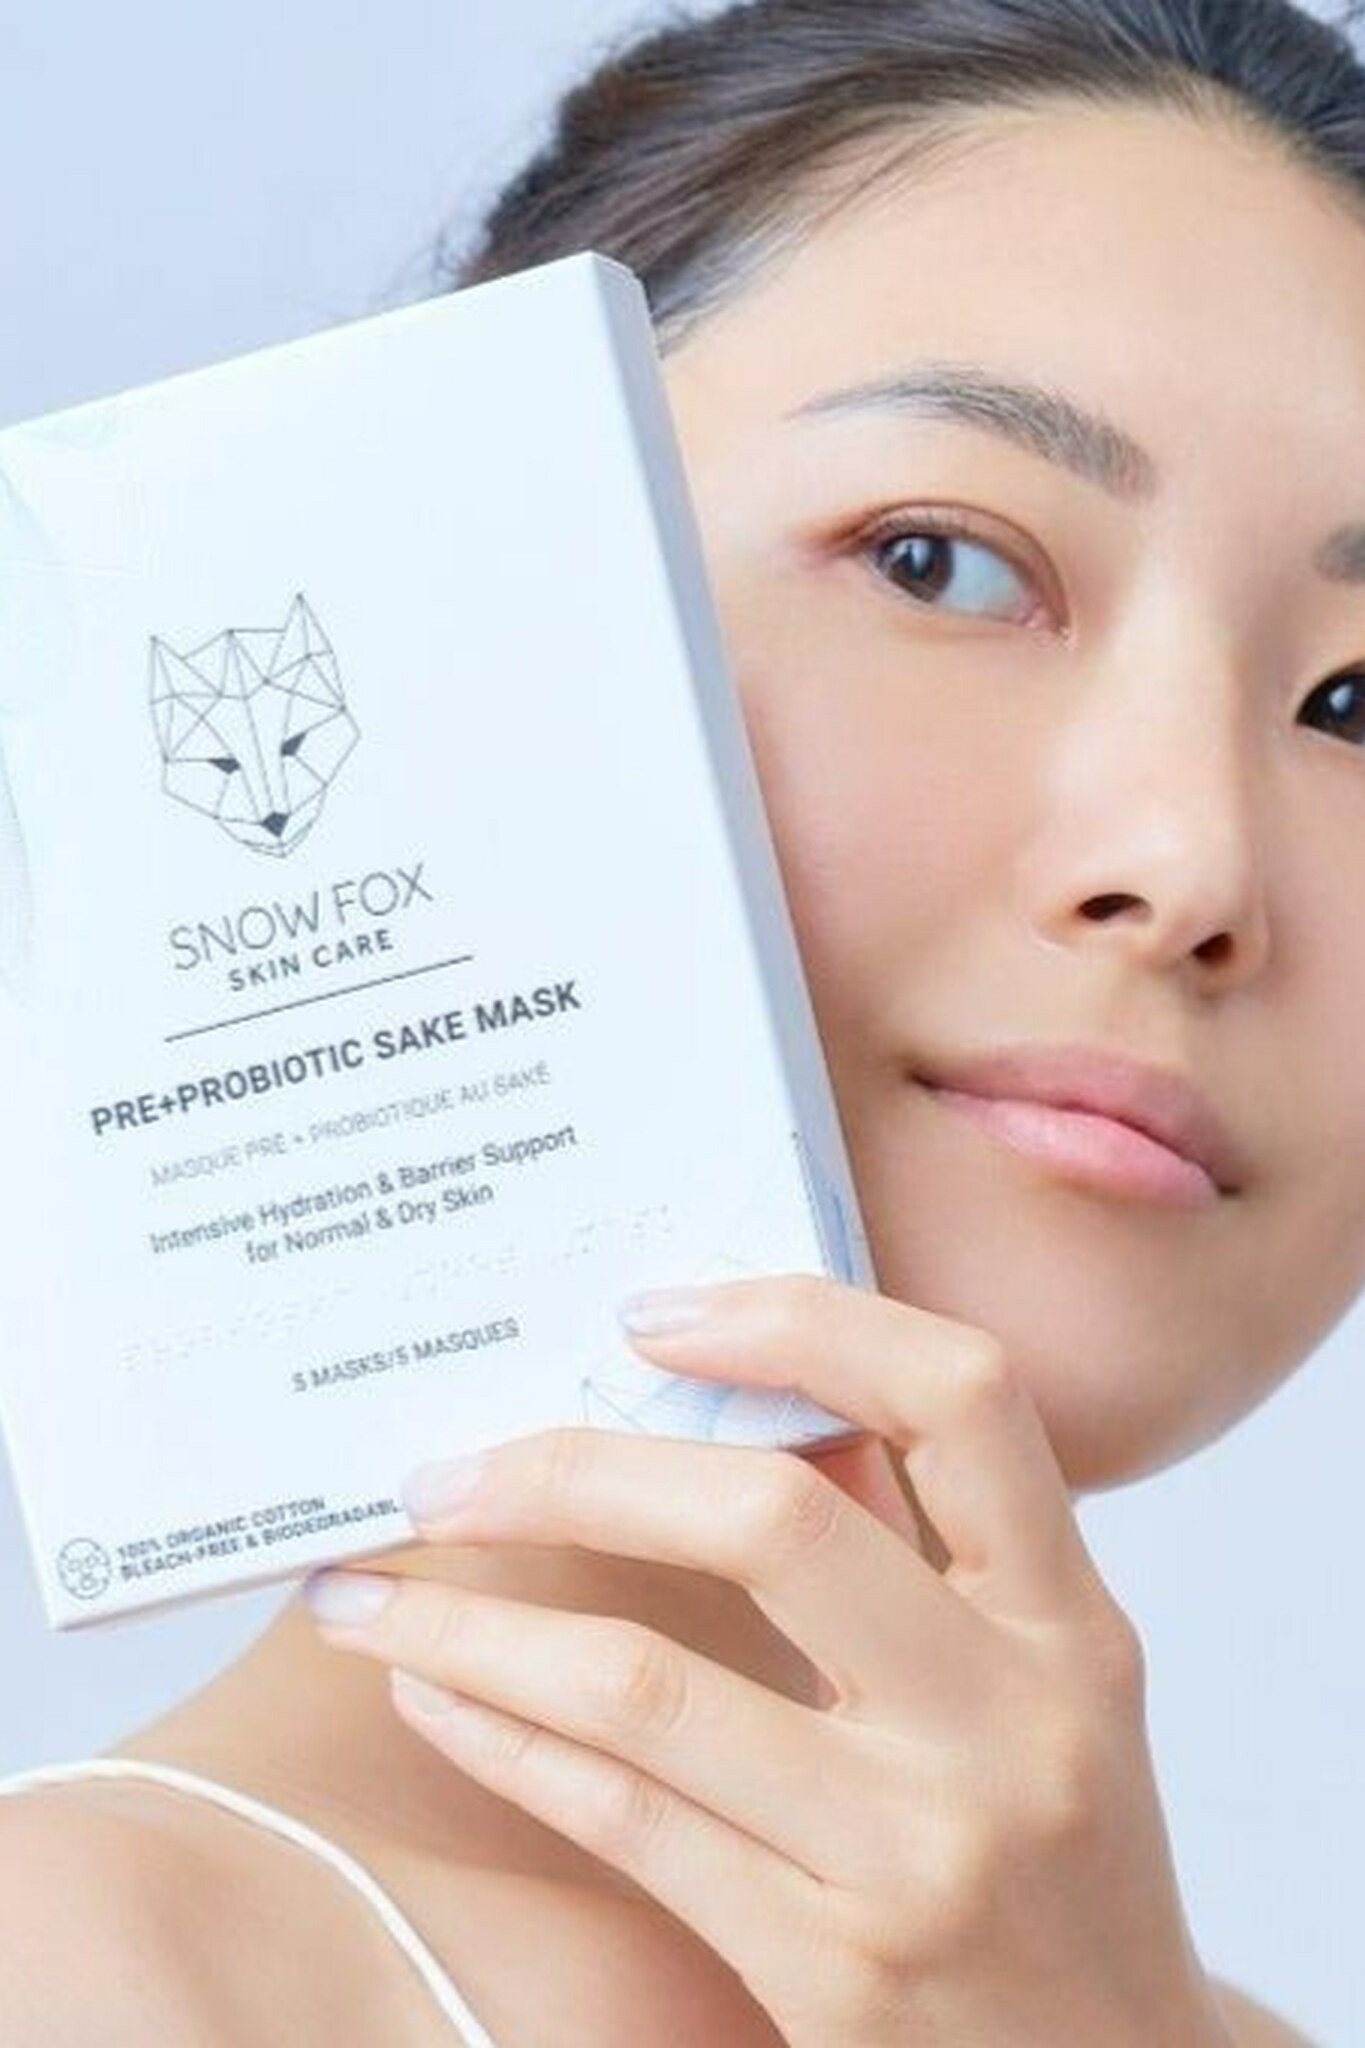 Pre+Probiotic Sheet Mask singelpack Snow Fox